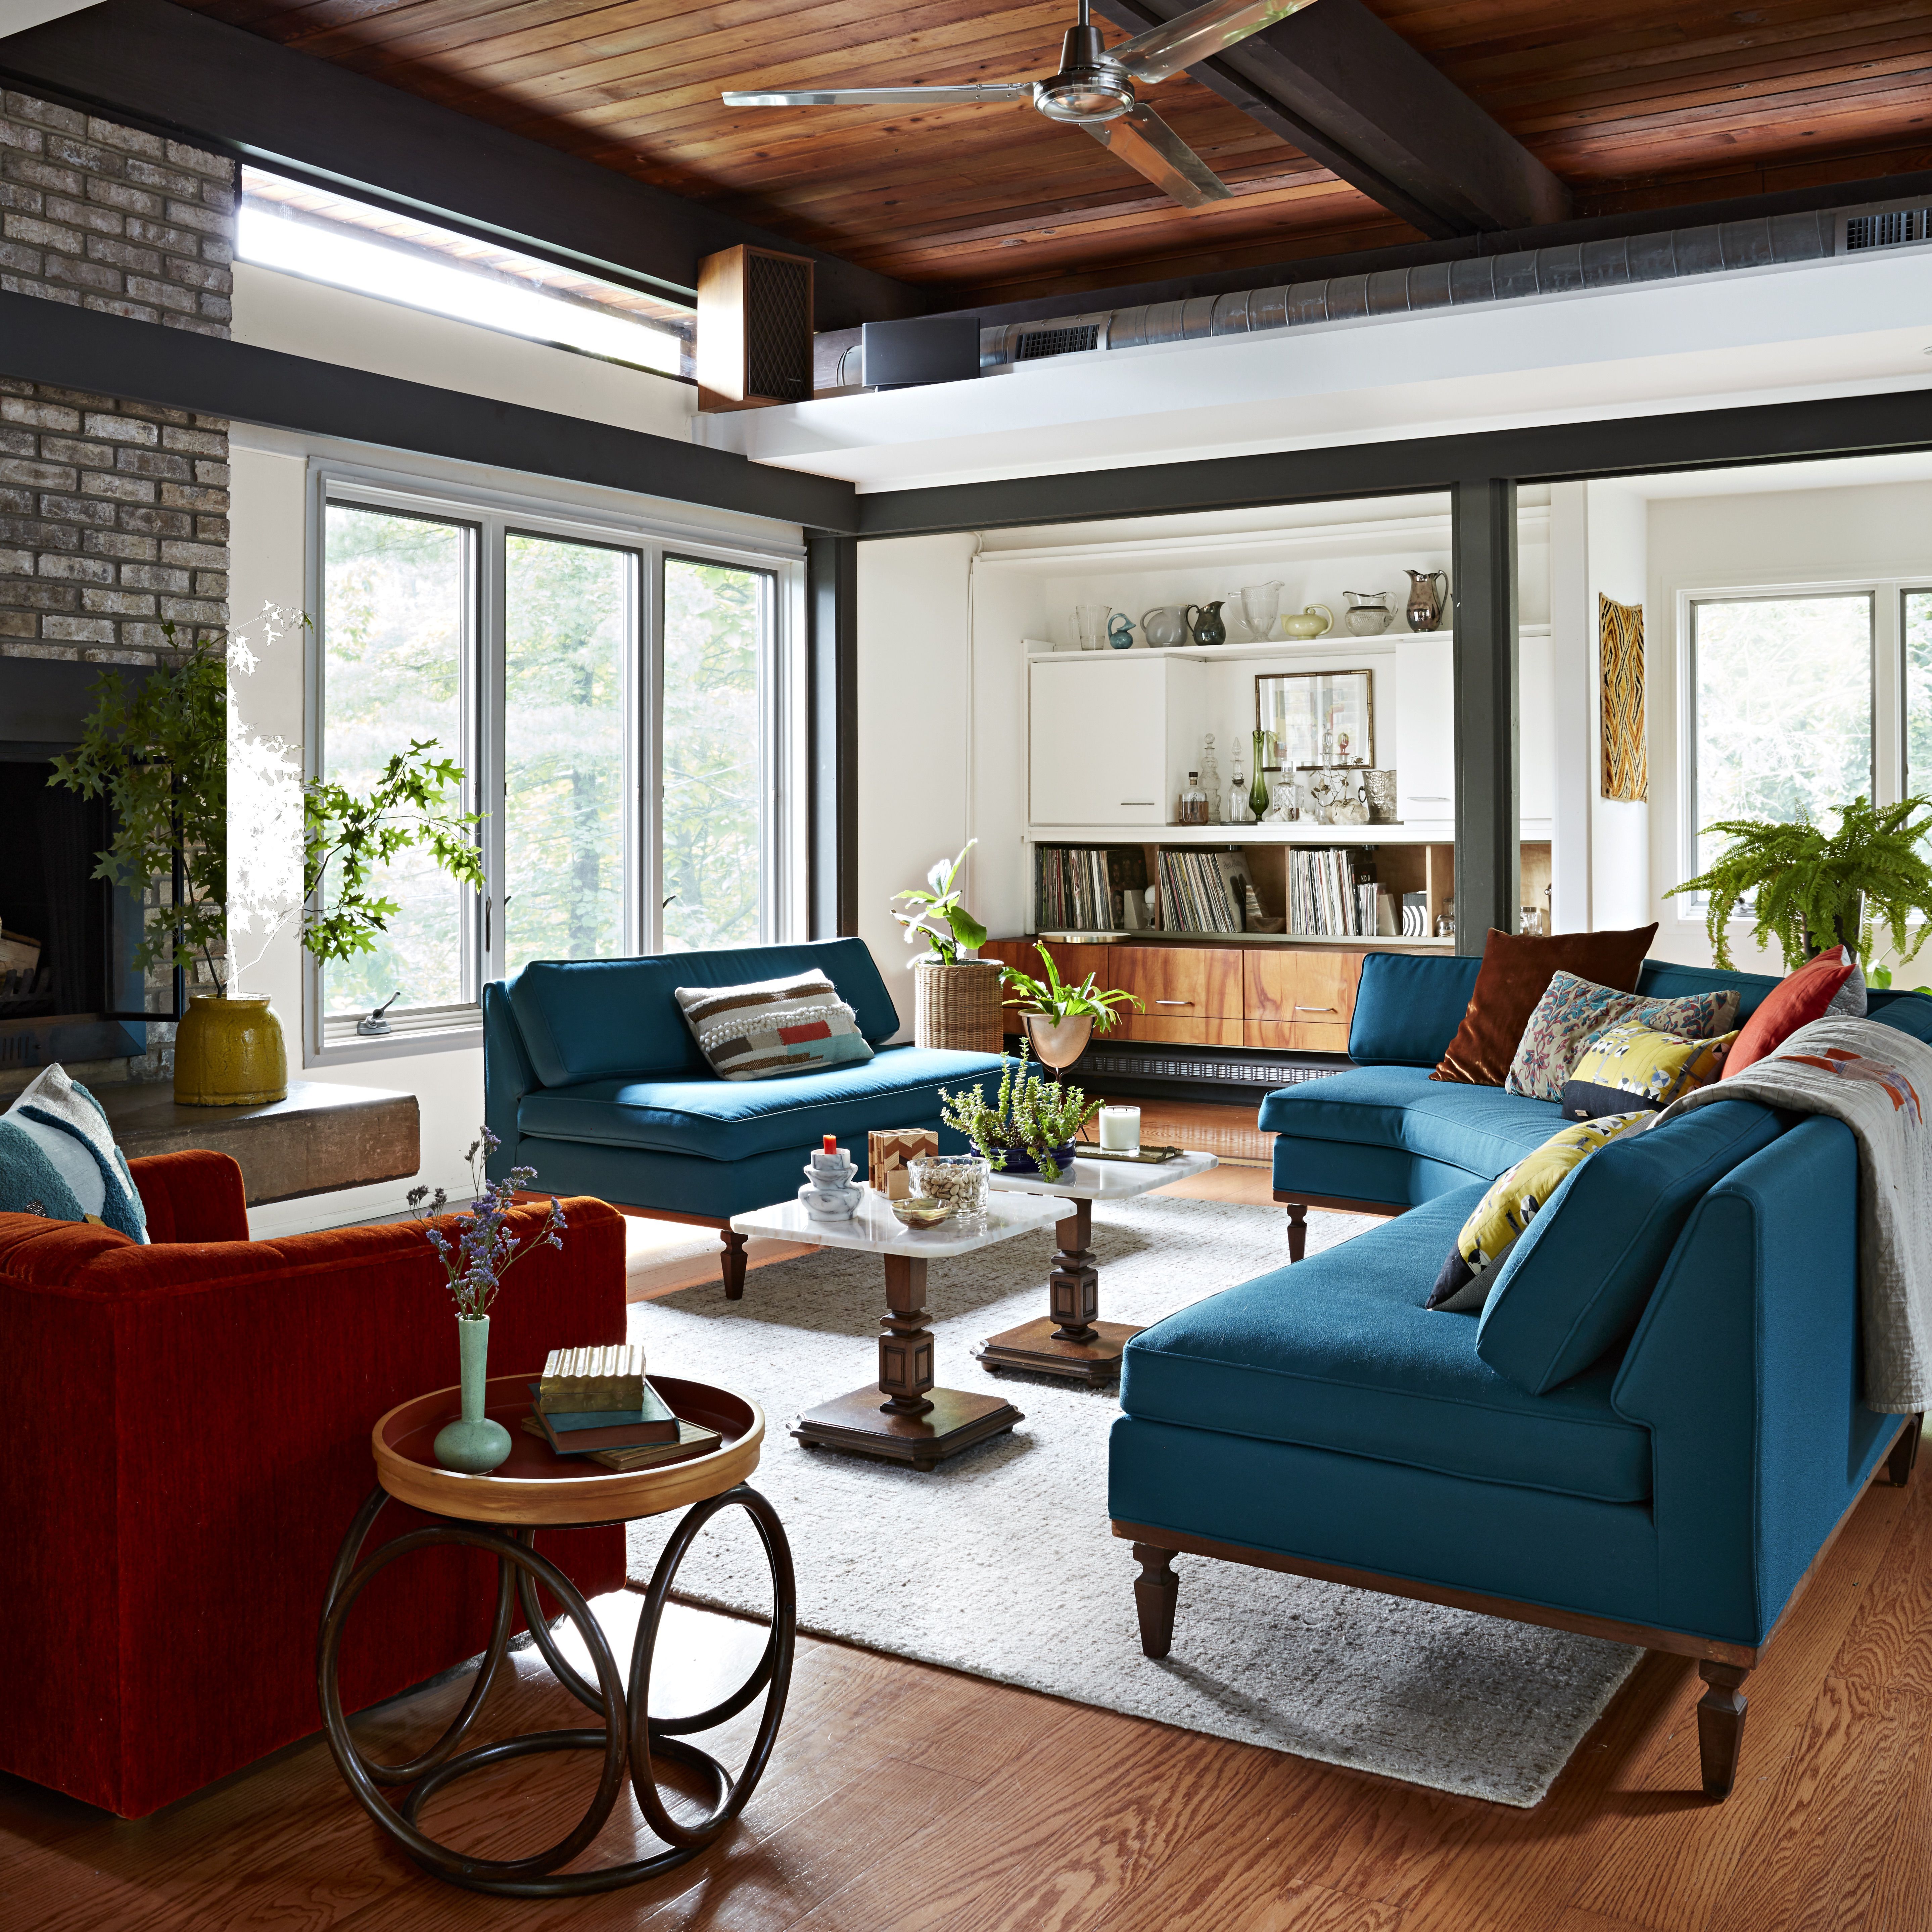 BHG Adoff House Story: современная гостиная середины века с каменным камином, ярко-оранжевыми и бирюзовыми диванами и стульями.